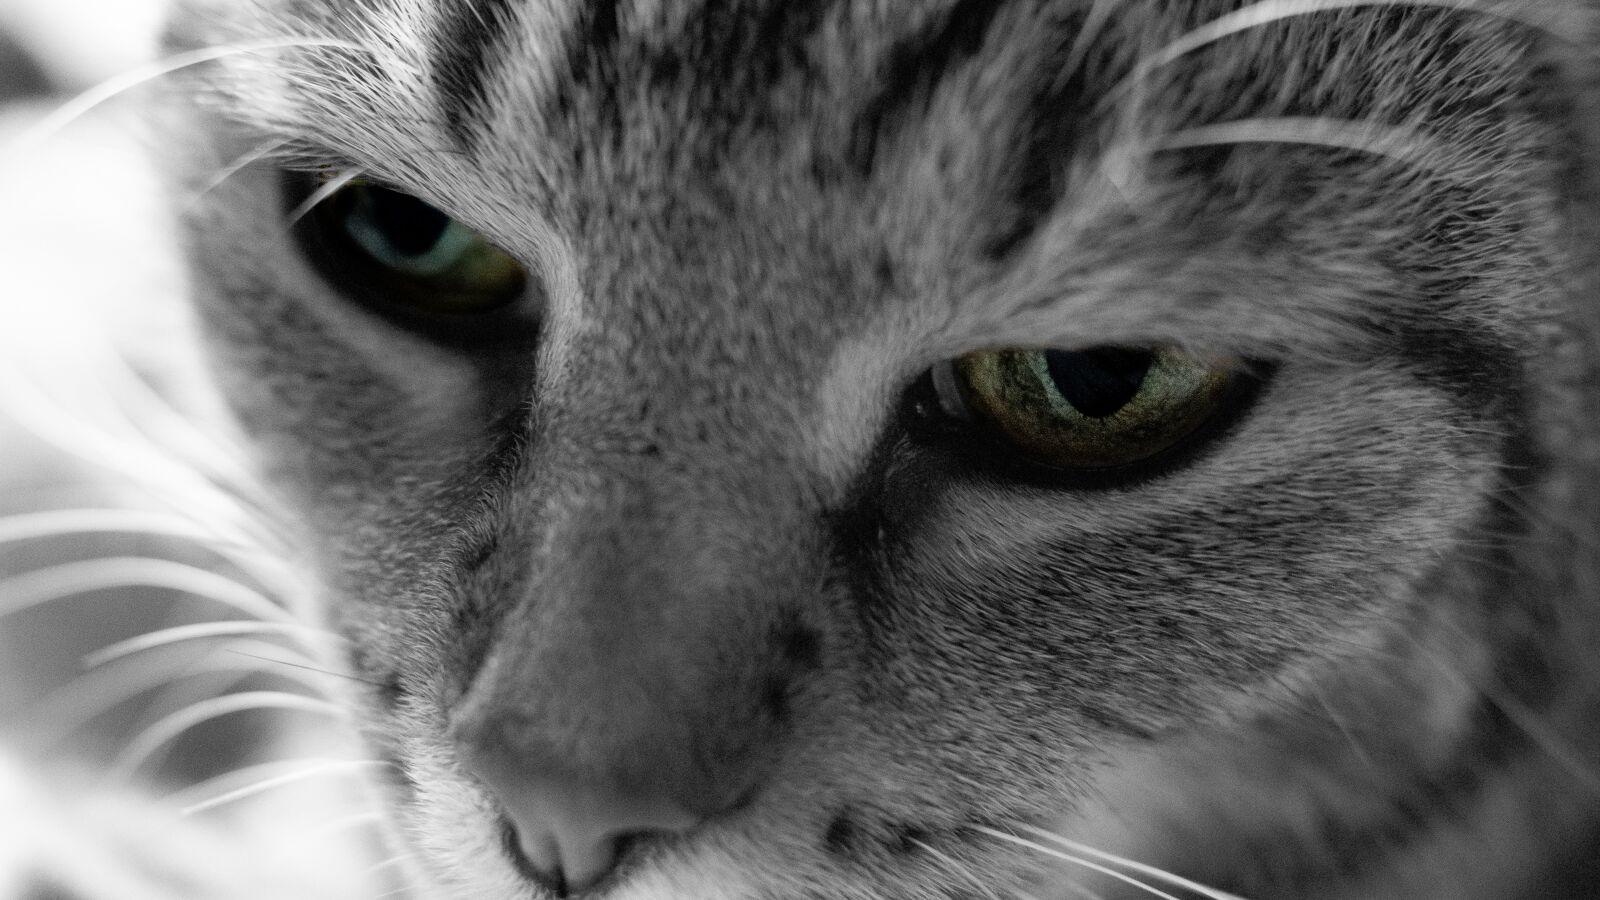 Sony DT 35mm F1.8 SAM sample photo. Cat, eye, black white photography